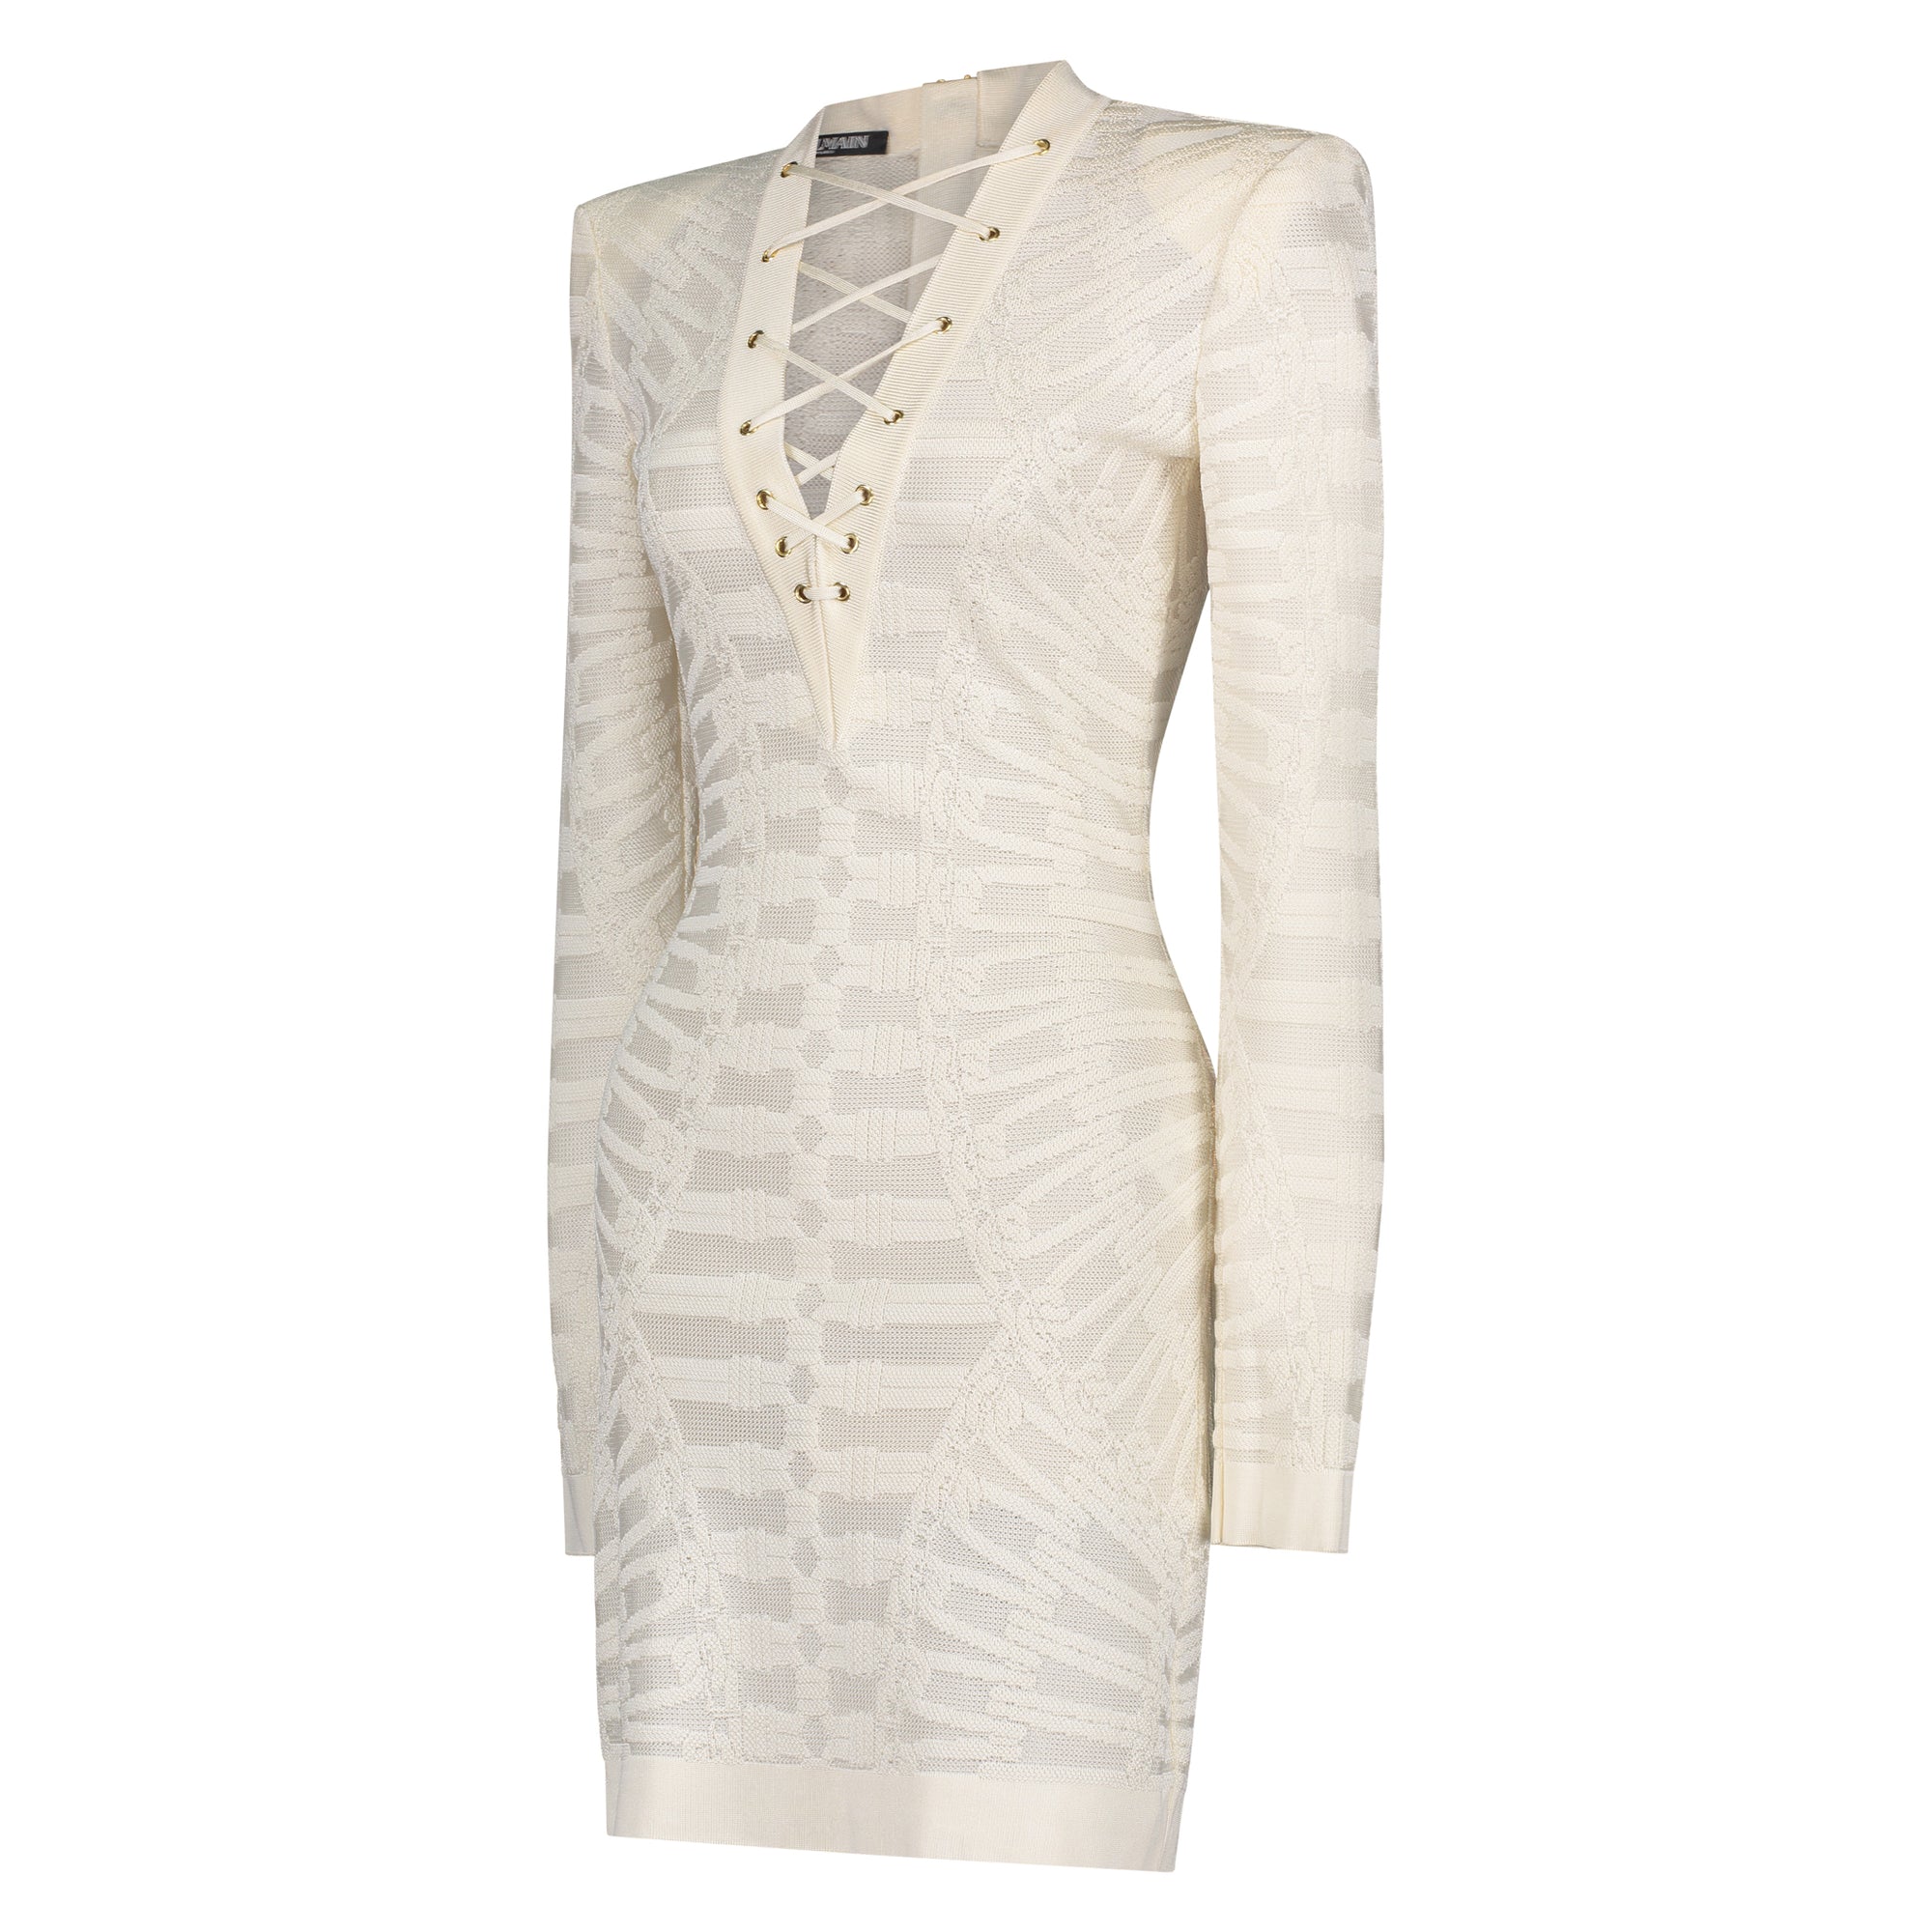 Balmain White Lace Dress